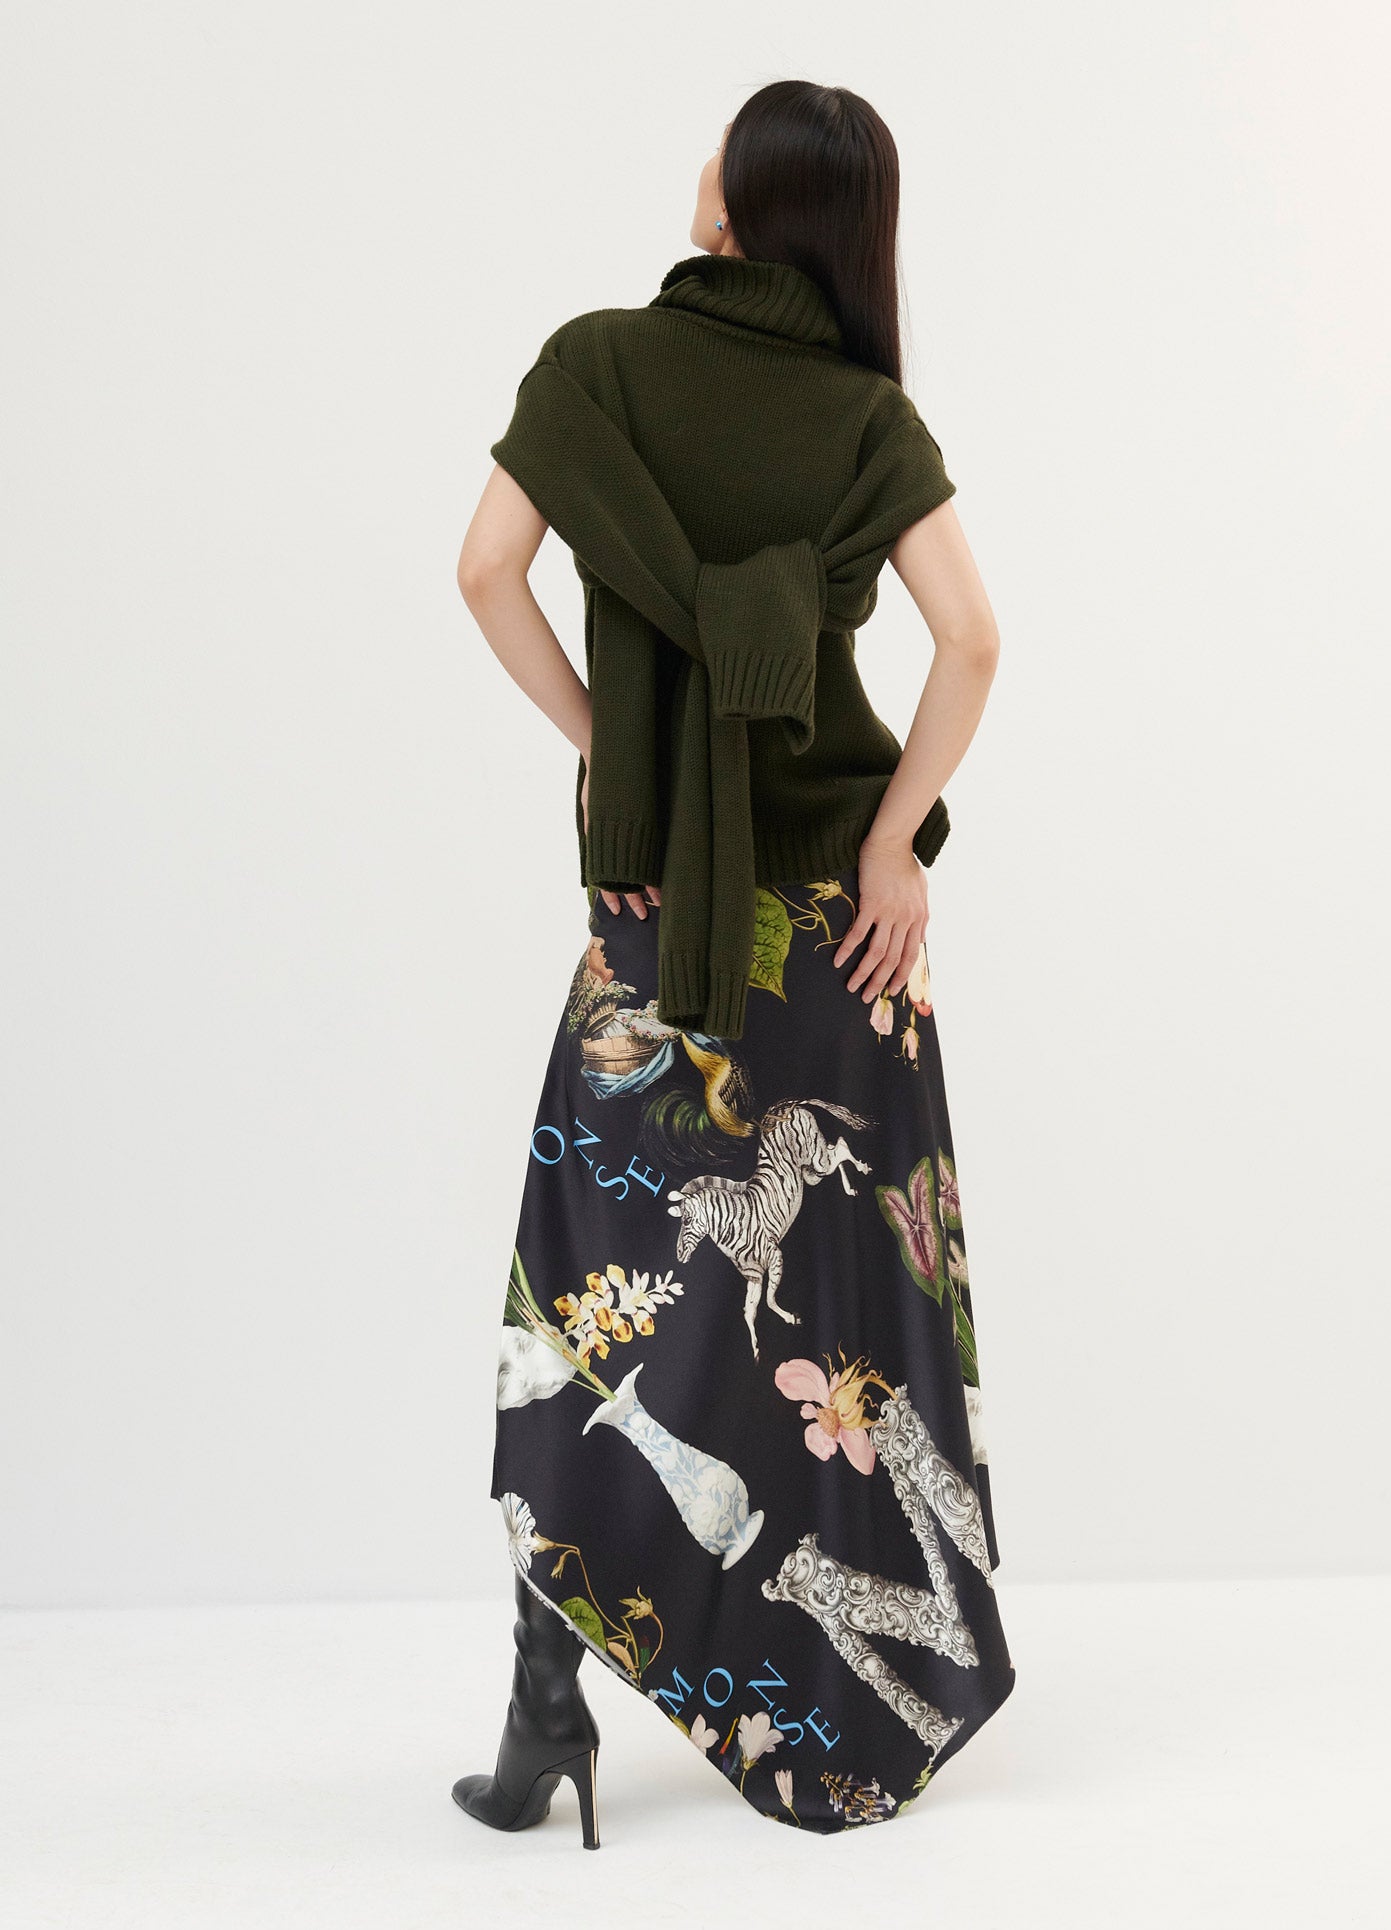 MONSE Print Satin Long Draped Skirt in Black Print on Model Back View